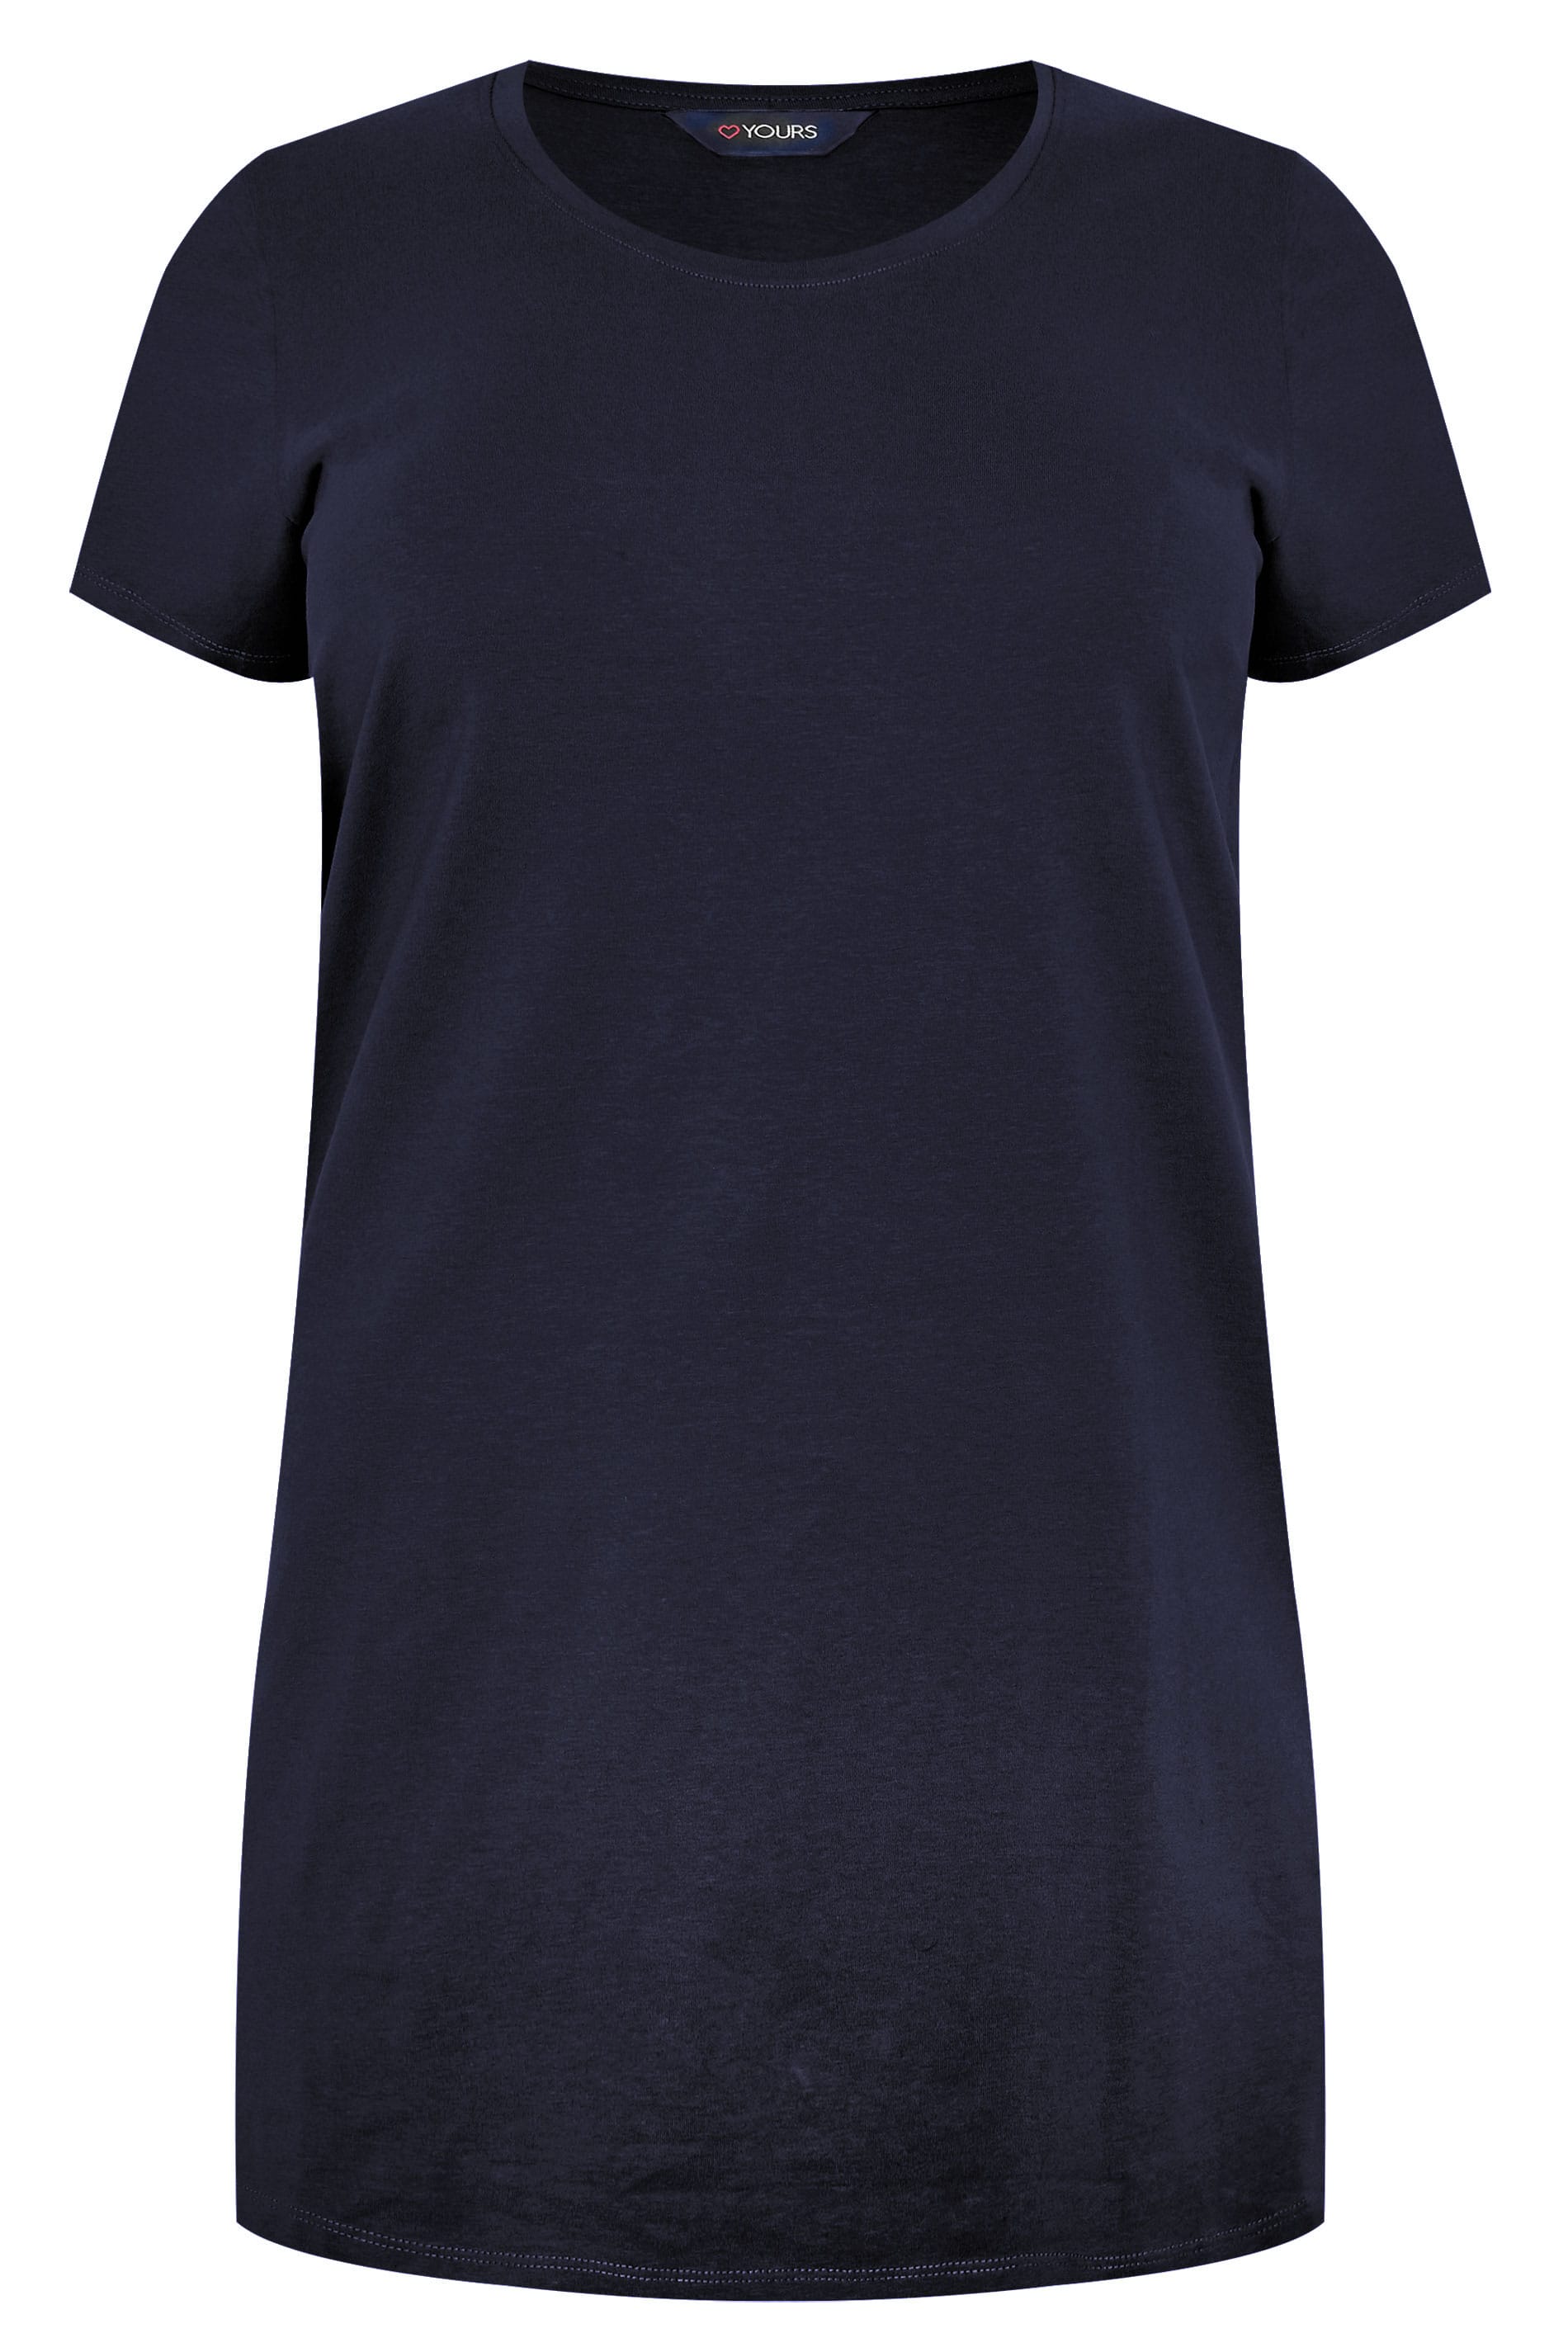 Grande taille  Tops Grande taille  T-Shirts Basiques & Débardeurs | T-Shirt Bleu Marine Coupe Longue - TE40261